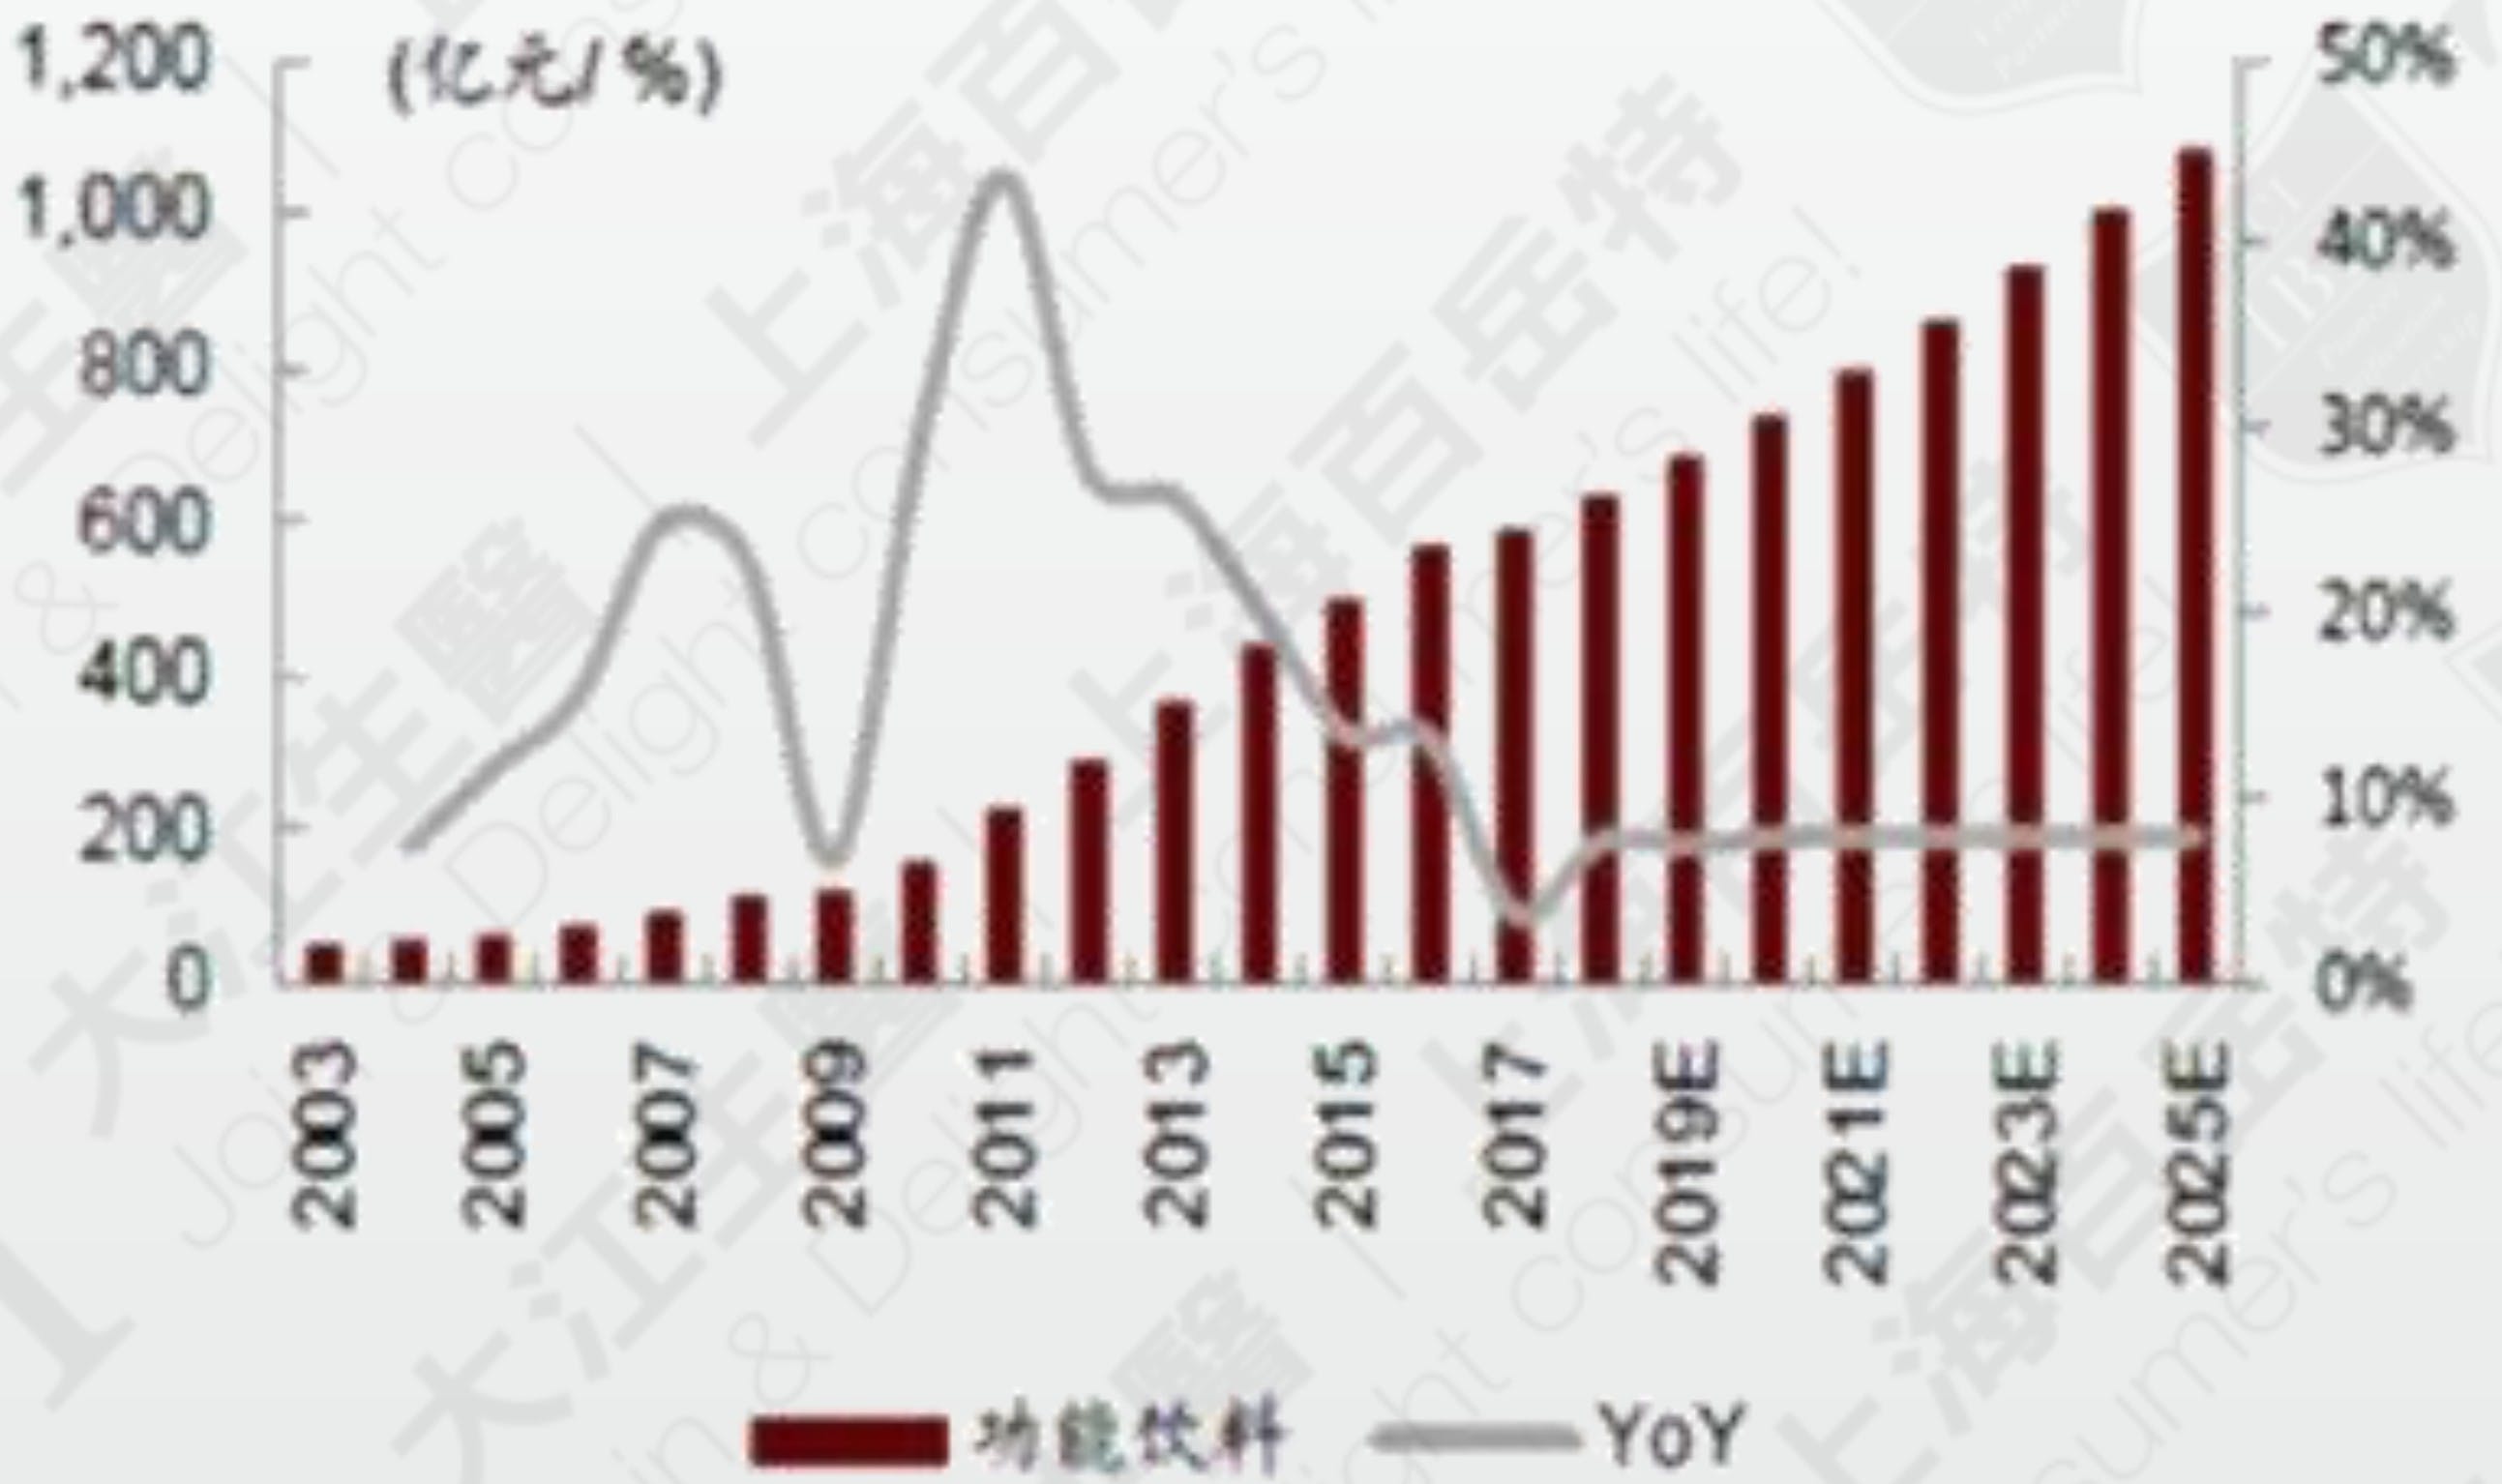 中国功能性饮品市场规模与趋势(2017) 资料来源: Euromonitor